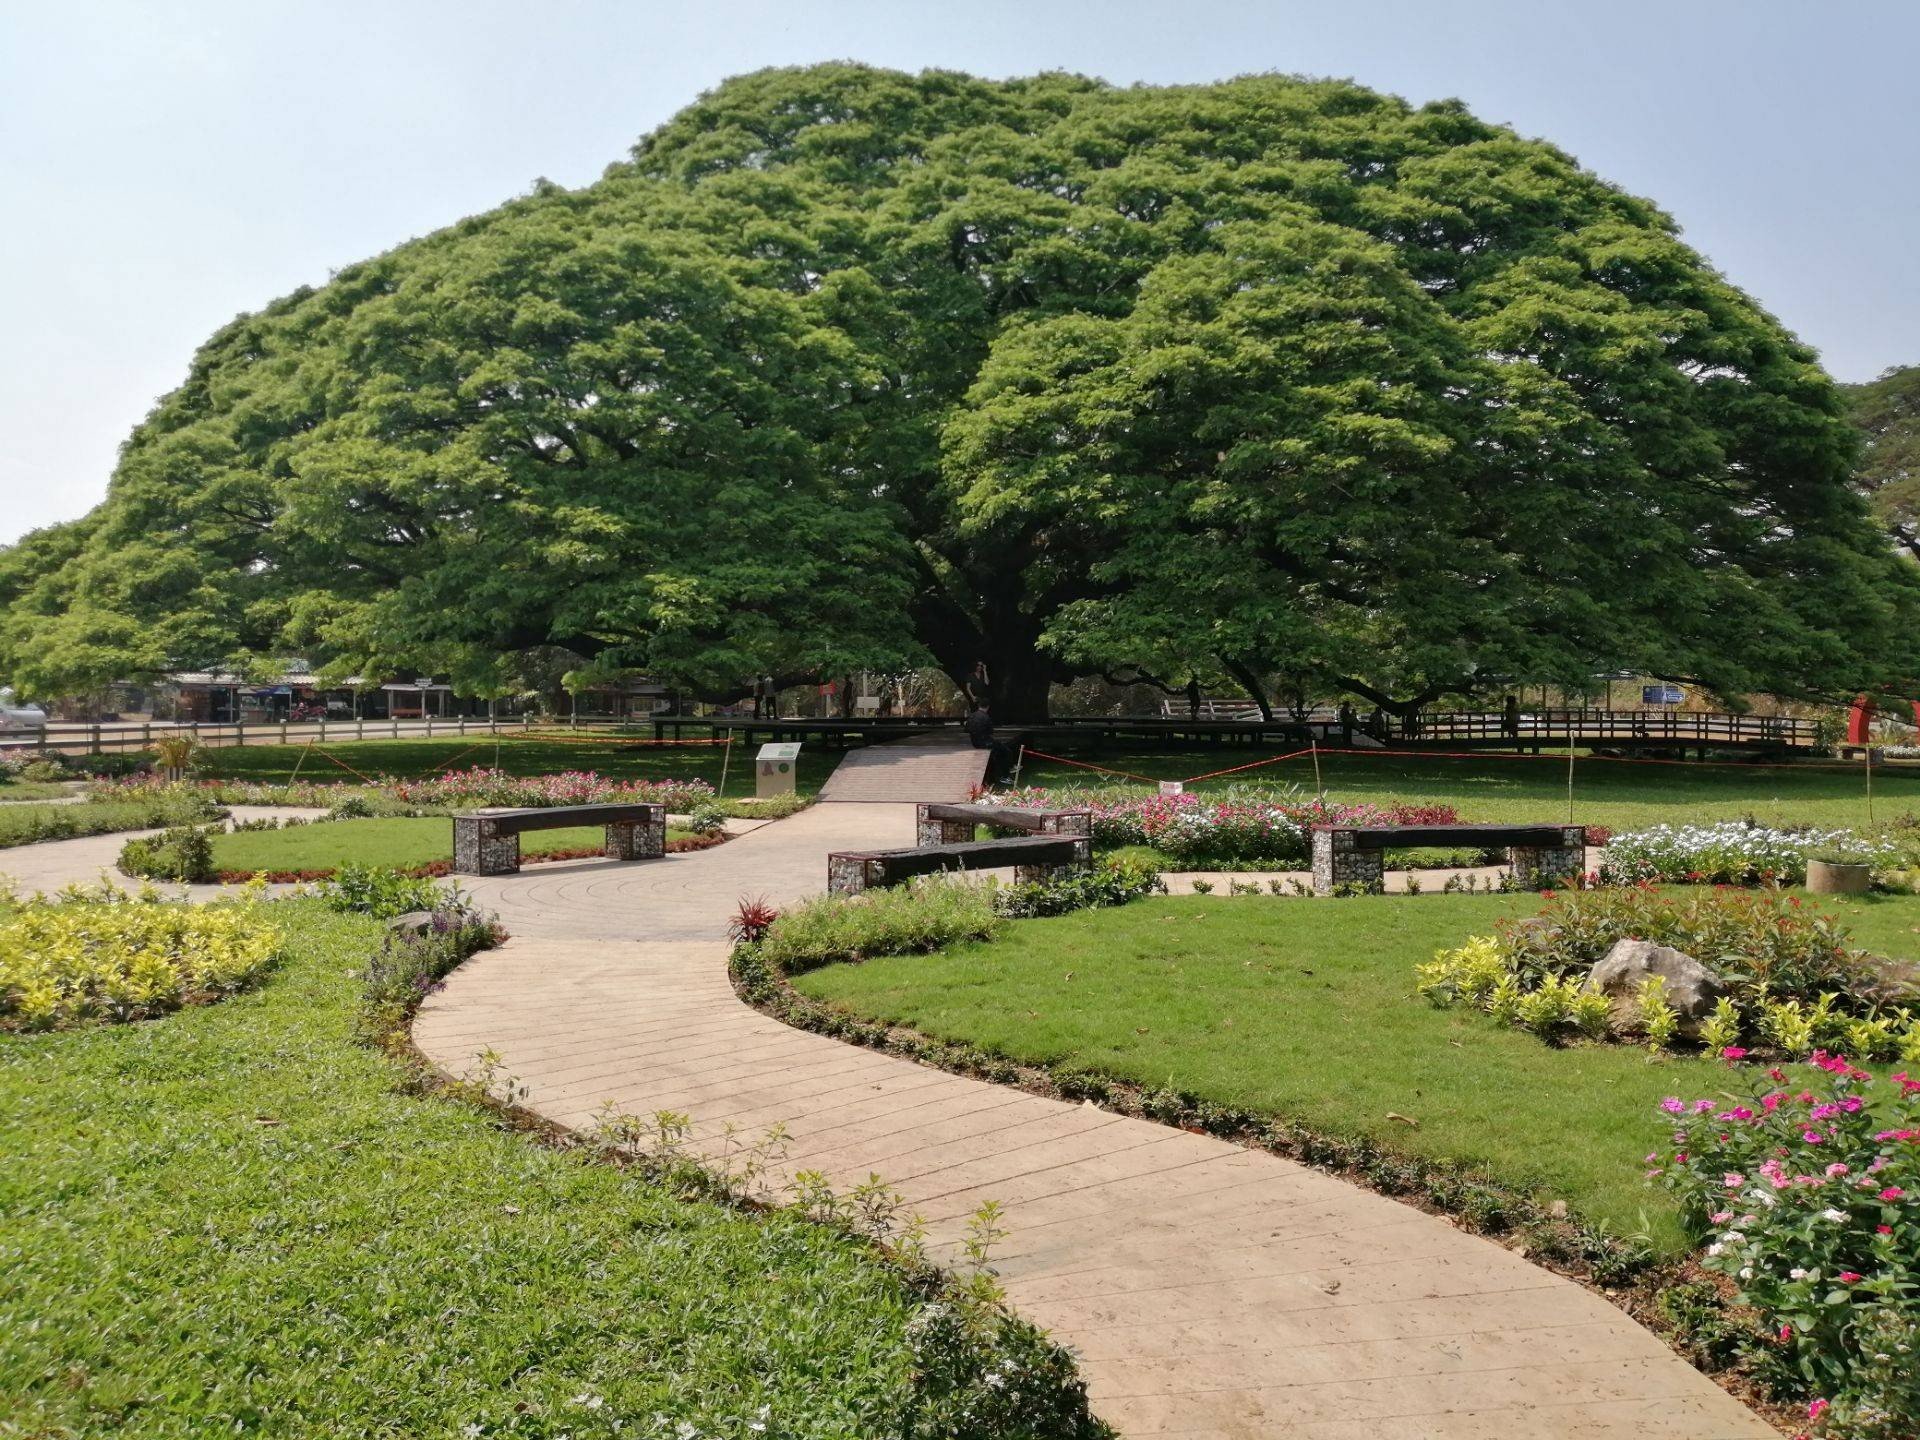 รีวิว จามจุรียักษ์ กาญจนบุรี - ต้น​จามจุรี​ยักษ์​ ในรูปโฉมใหม่​  ที่เน้นการอนุรักษ์​และรักษา​ให้ยั่งยืน